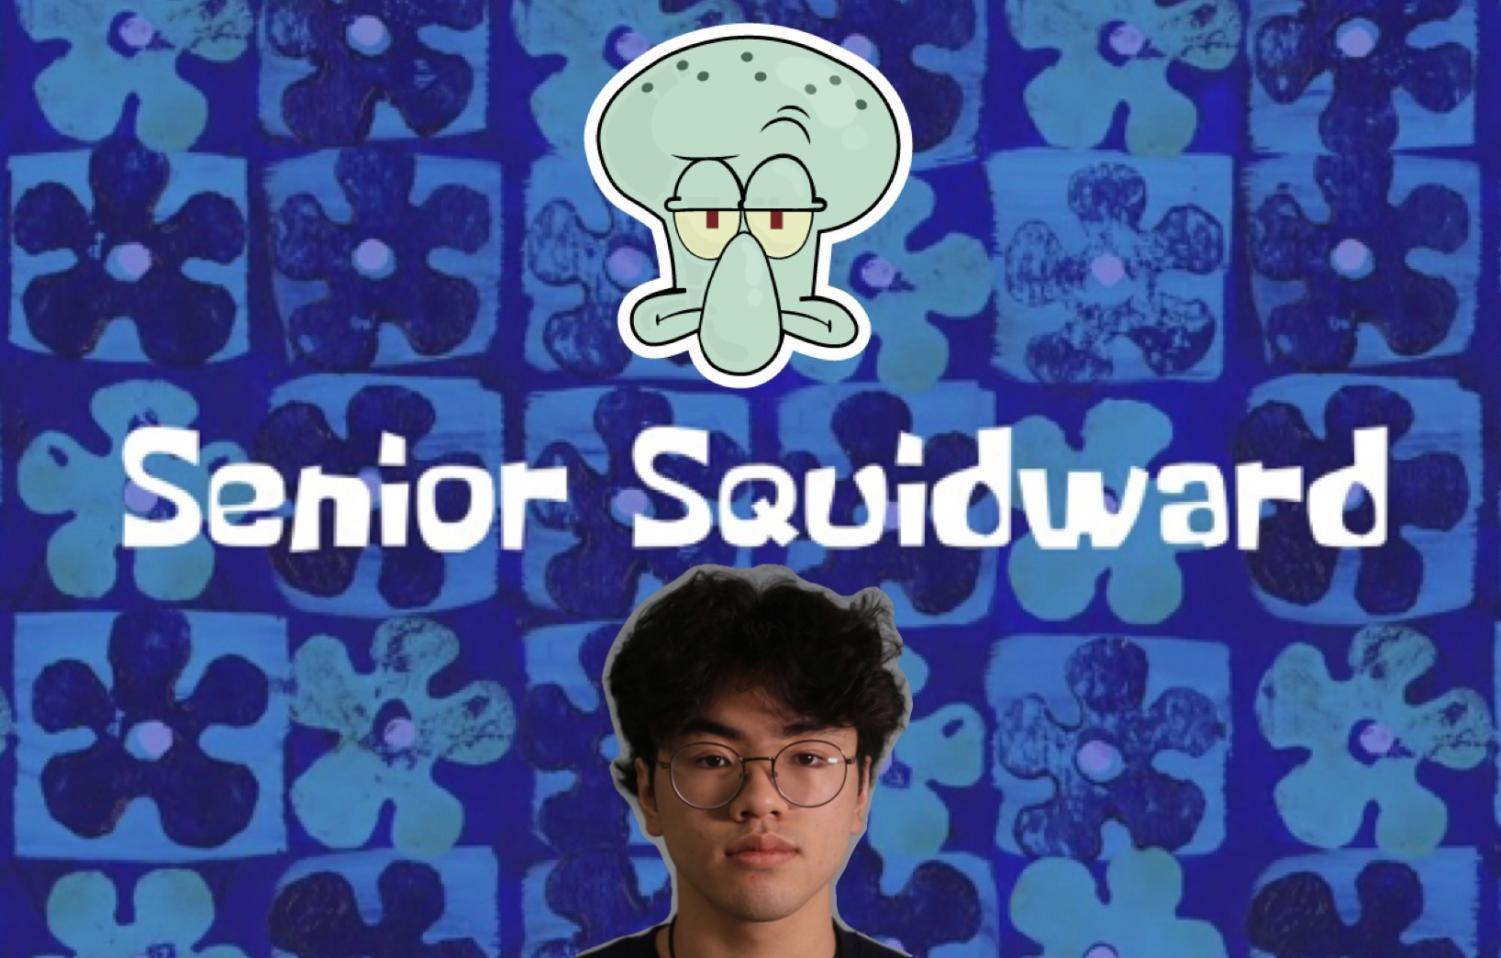 Opinion: Senior Squidward